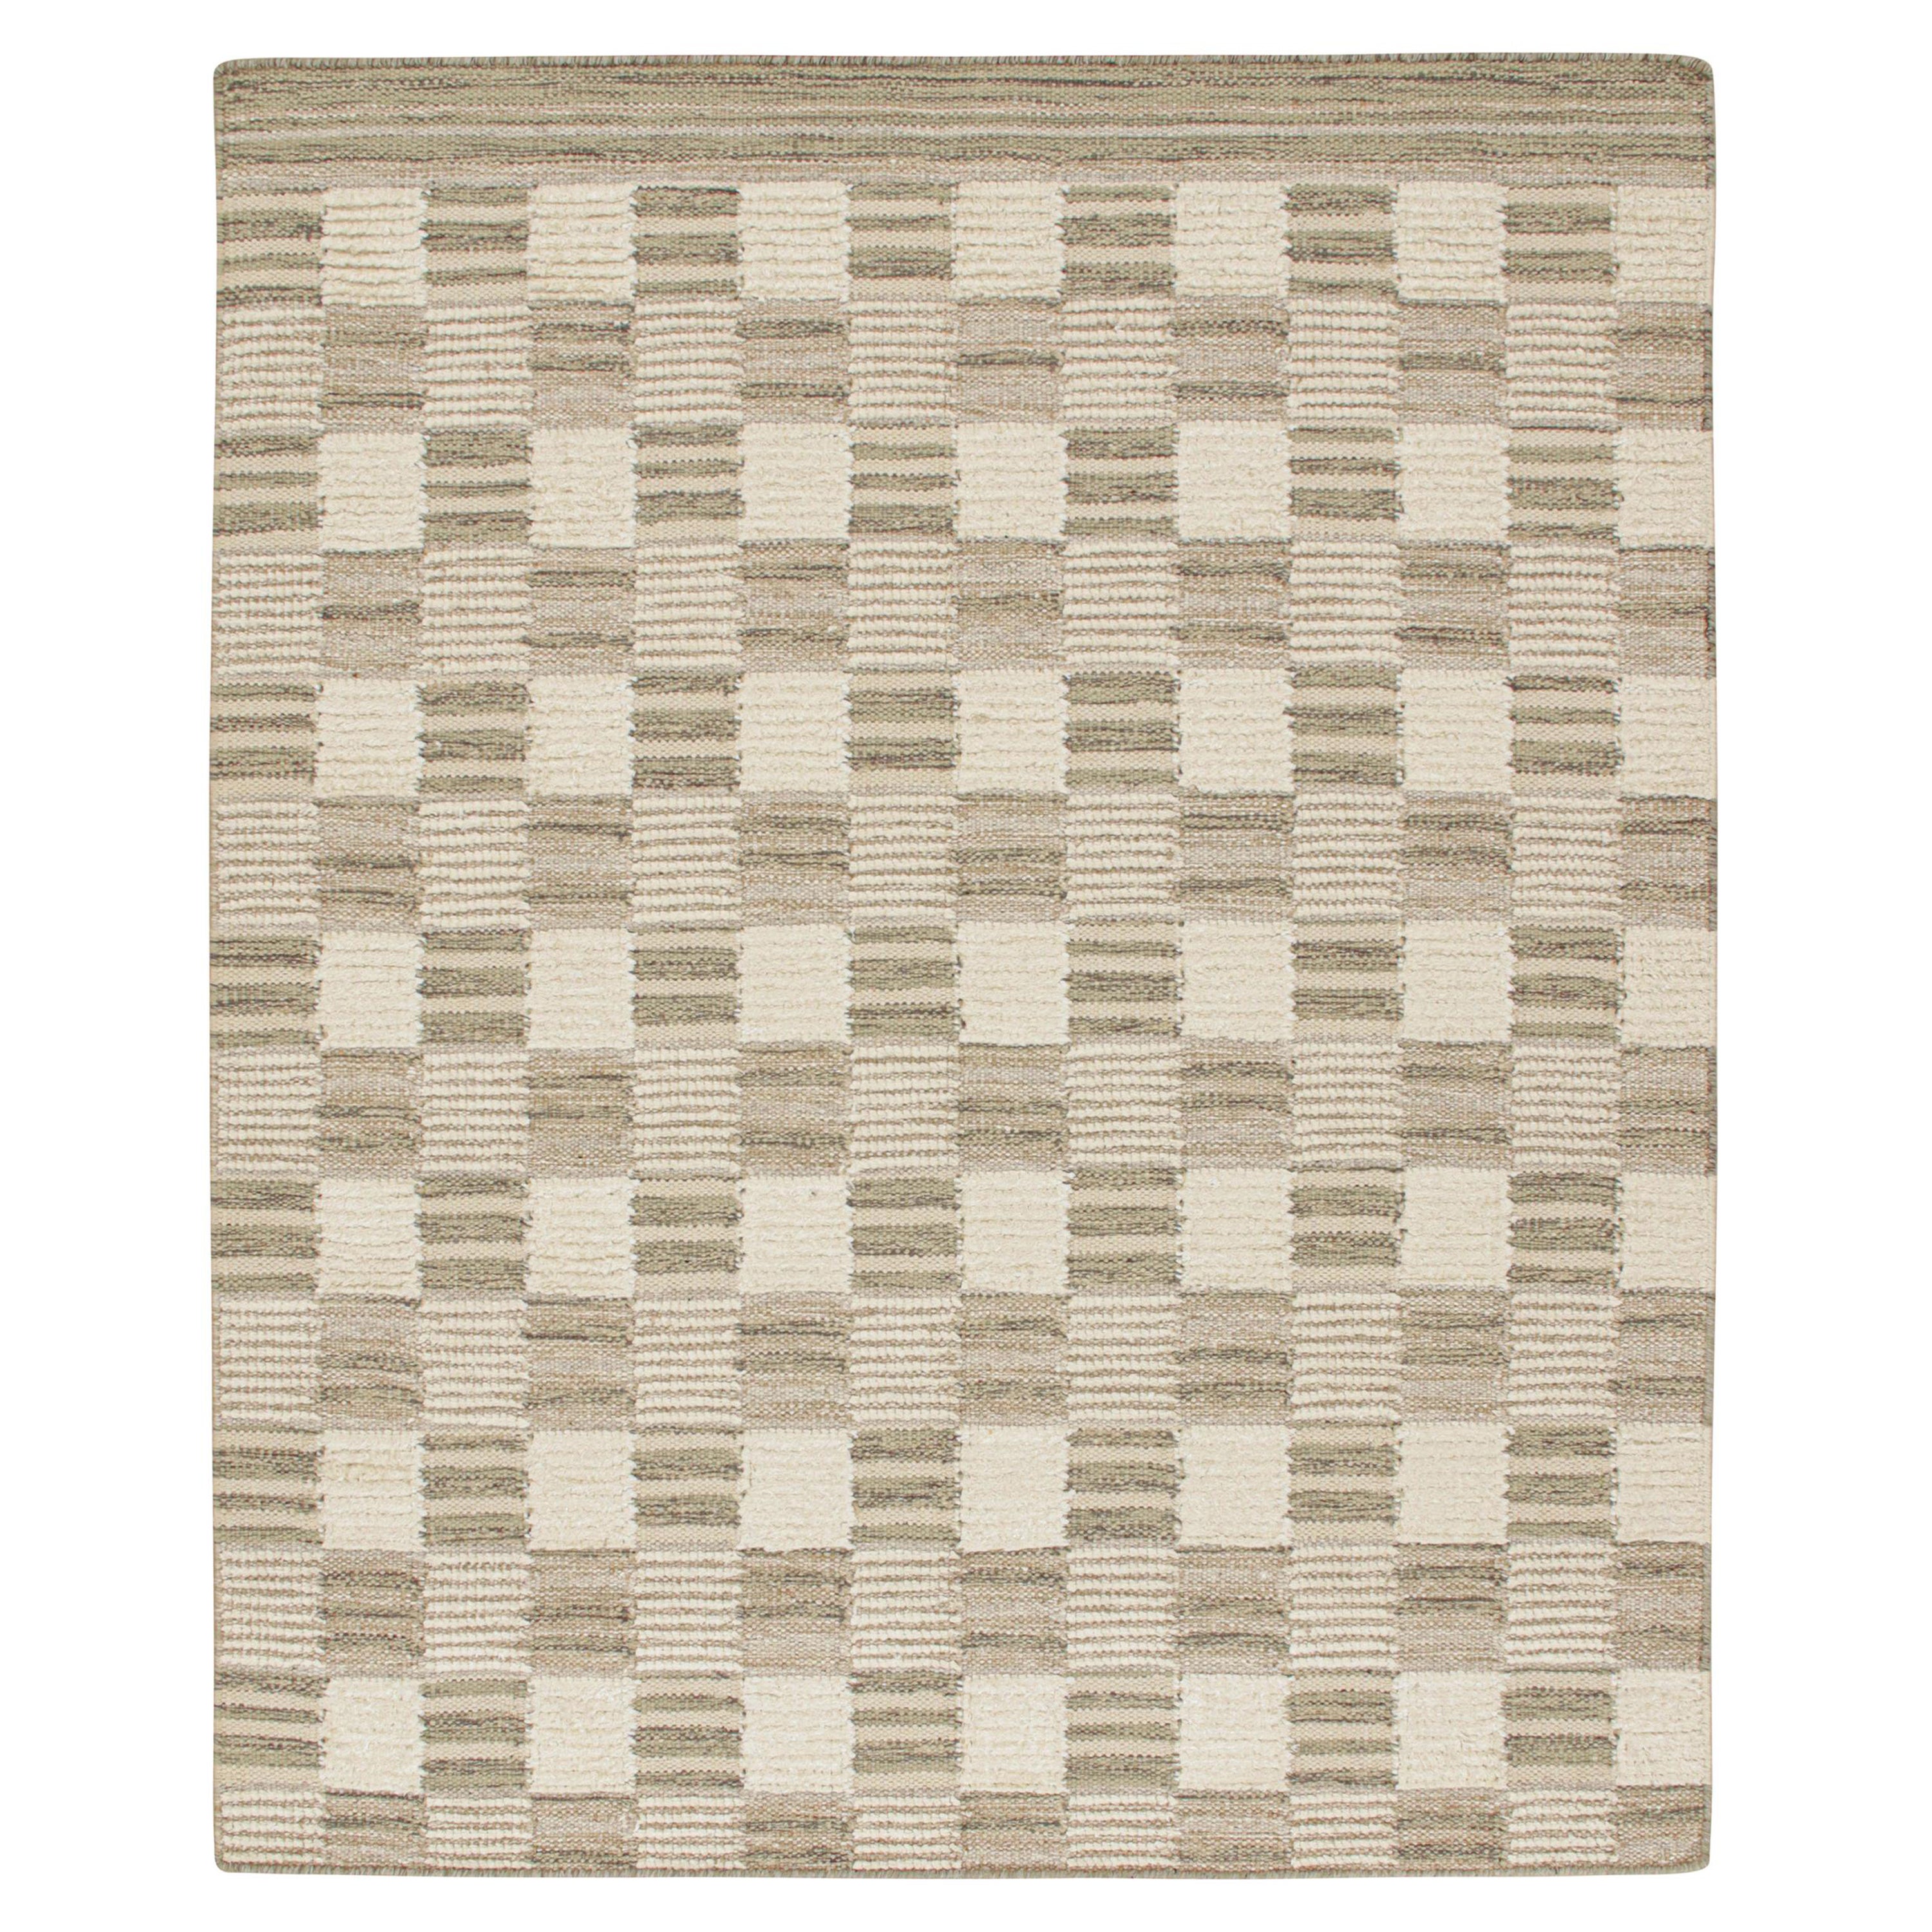 Rug & Kilim's Scandinavian Style Kilim in Beige-Brown & White Geometric Pattern (Kilim de style scandinave à motif géométrique beige, marron et blanc)